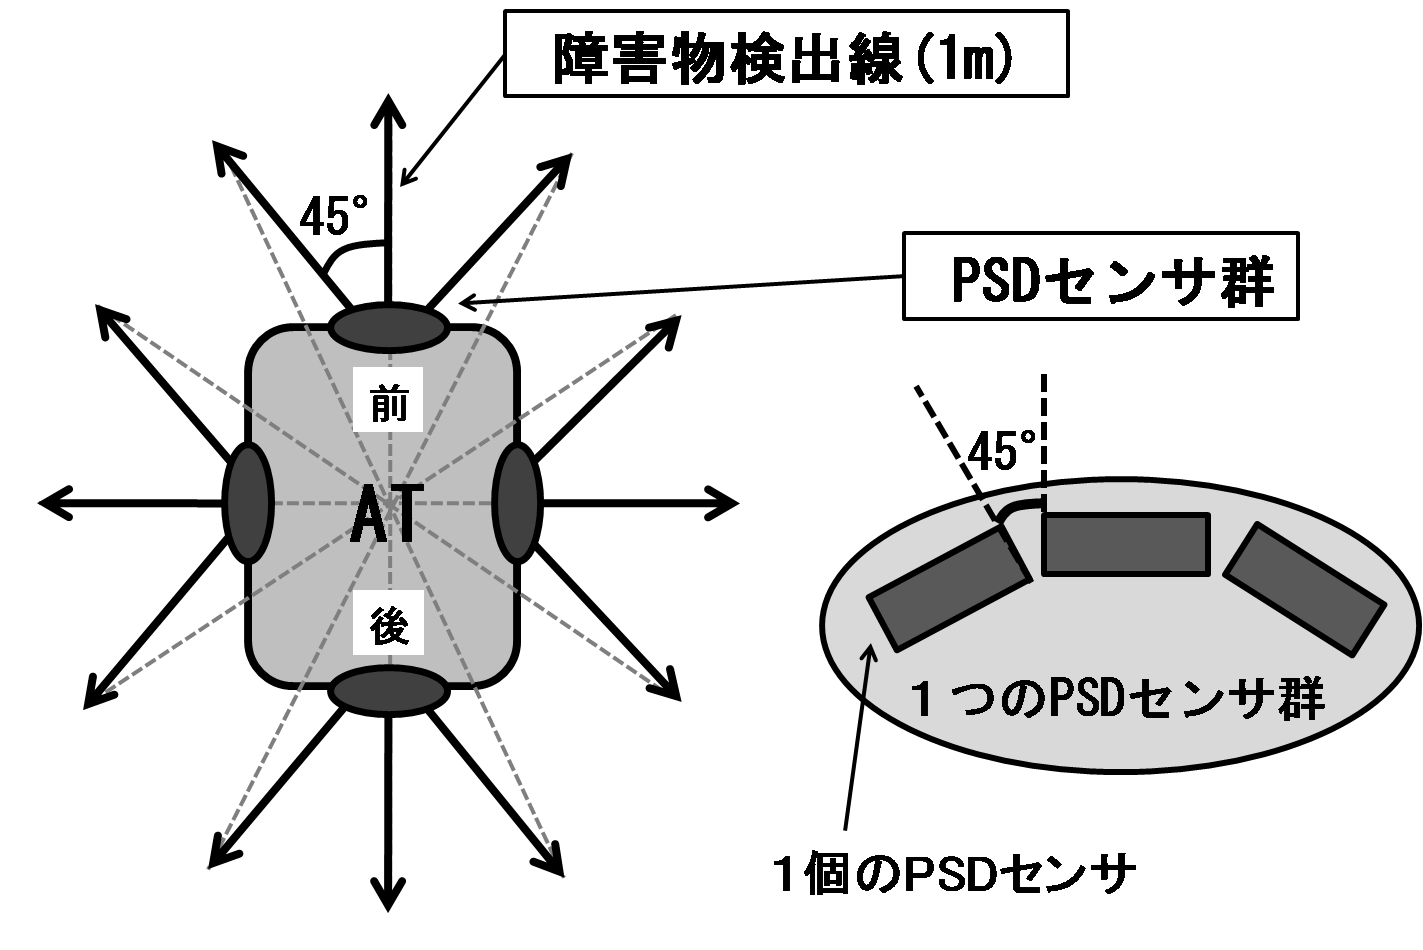 PSDセンサの配置